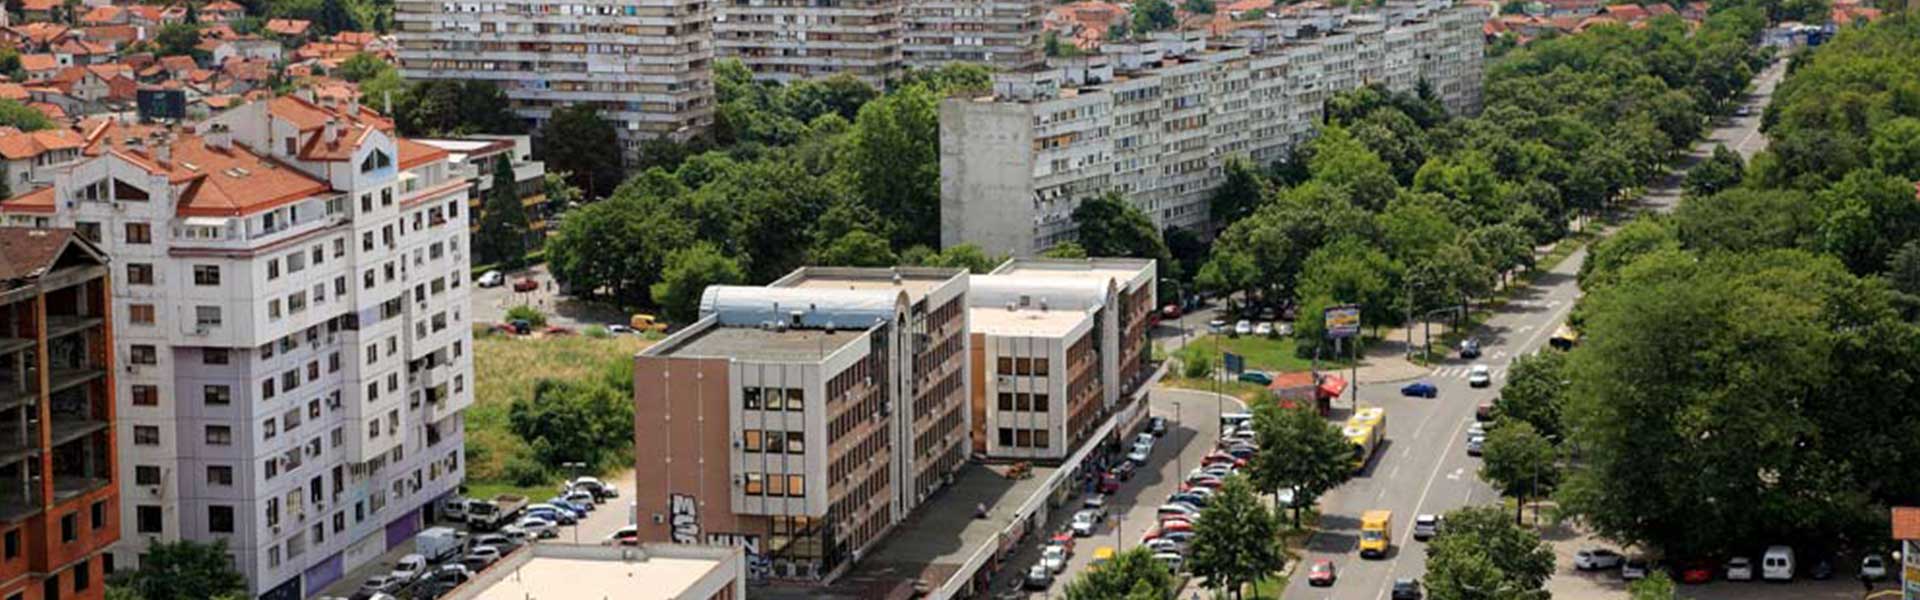 Selidbe Beograd | Voždovac